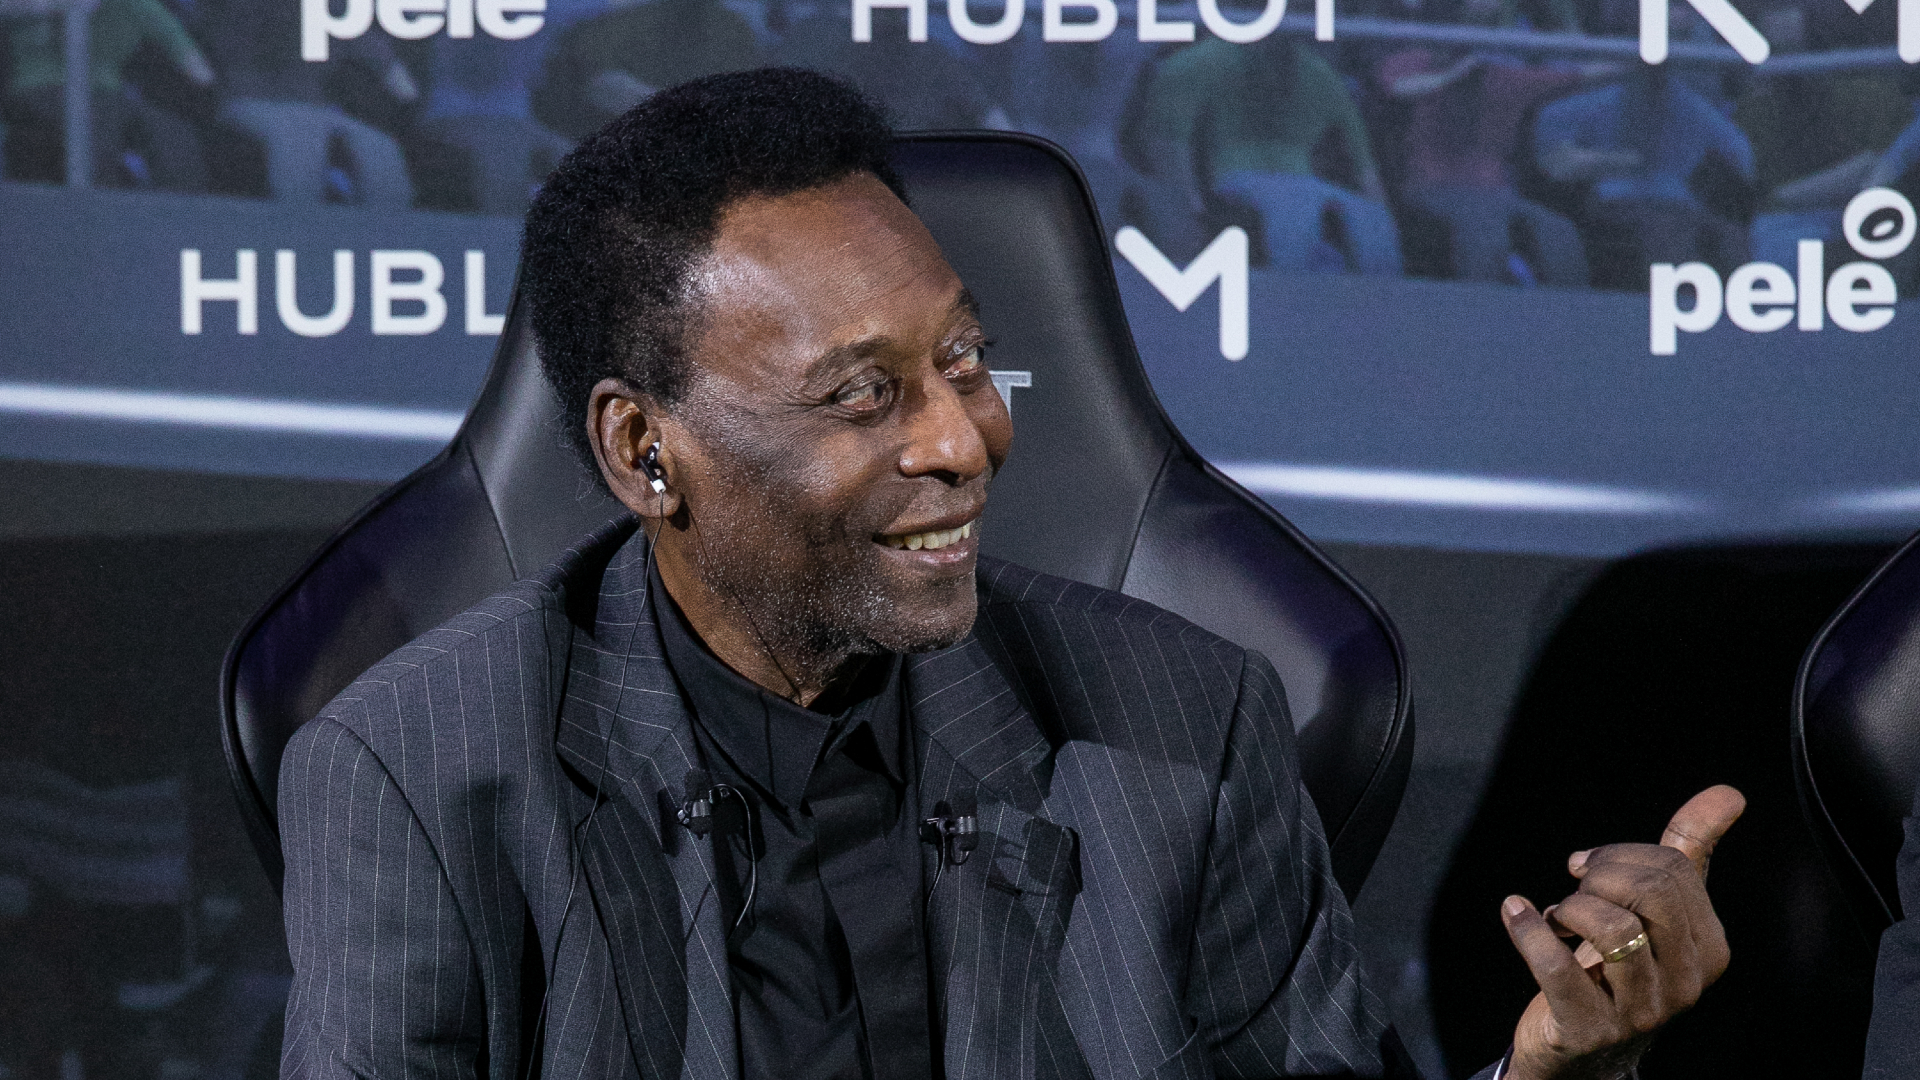 Pelé brilló para dejar una marca imborrable en la historia del fútbol